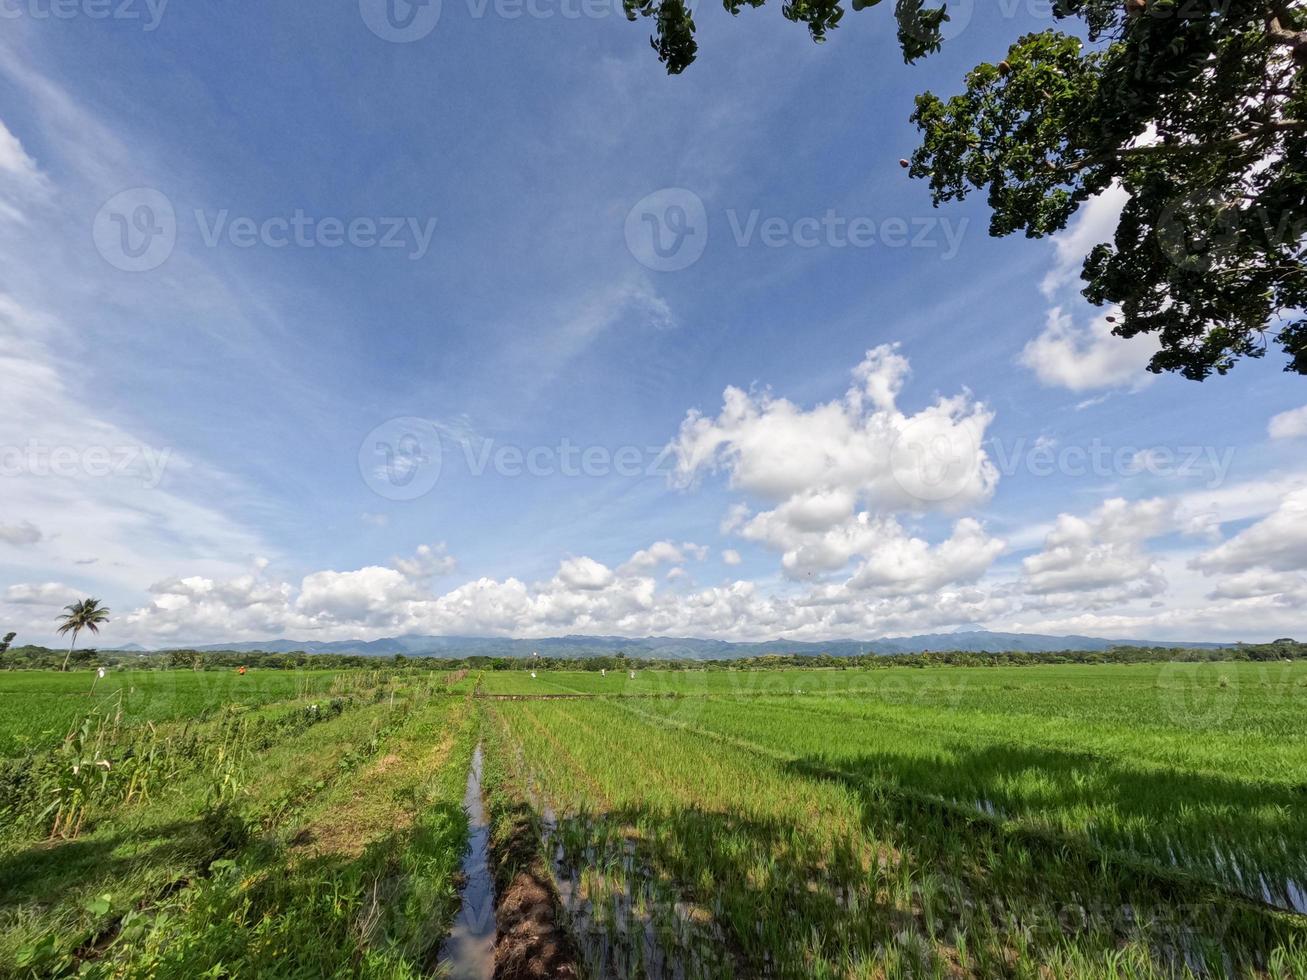 vista dos campos de arroz durante o dia com céu azul e nuvens brancas ao fundo, dia ensolarado na zona rural foto